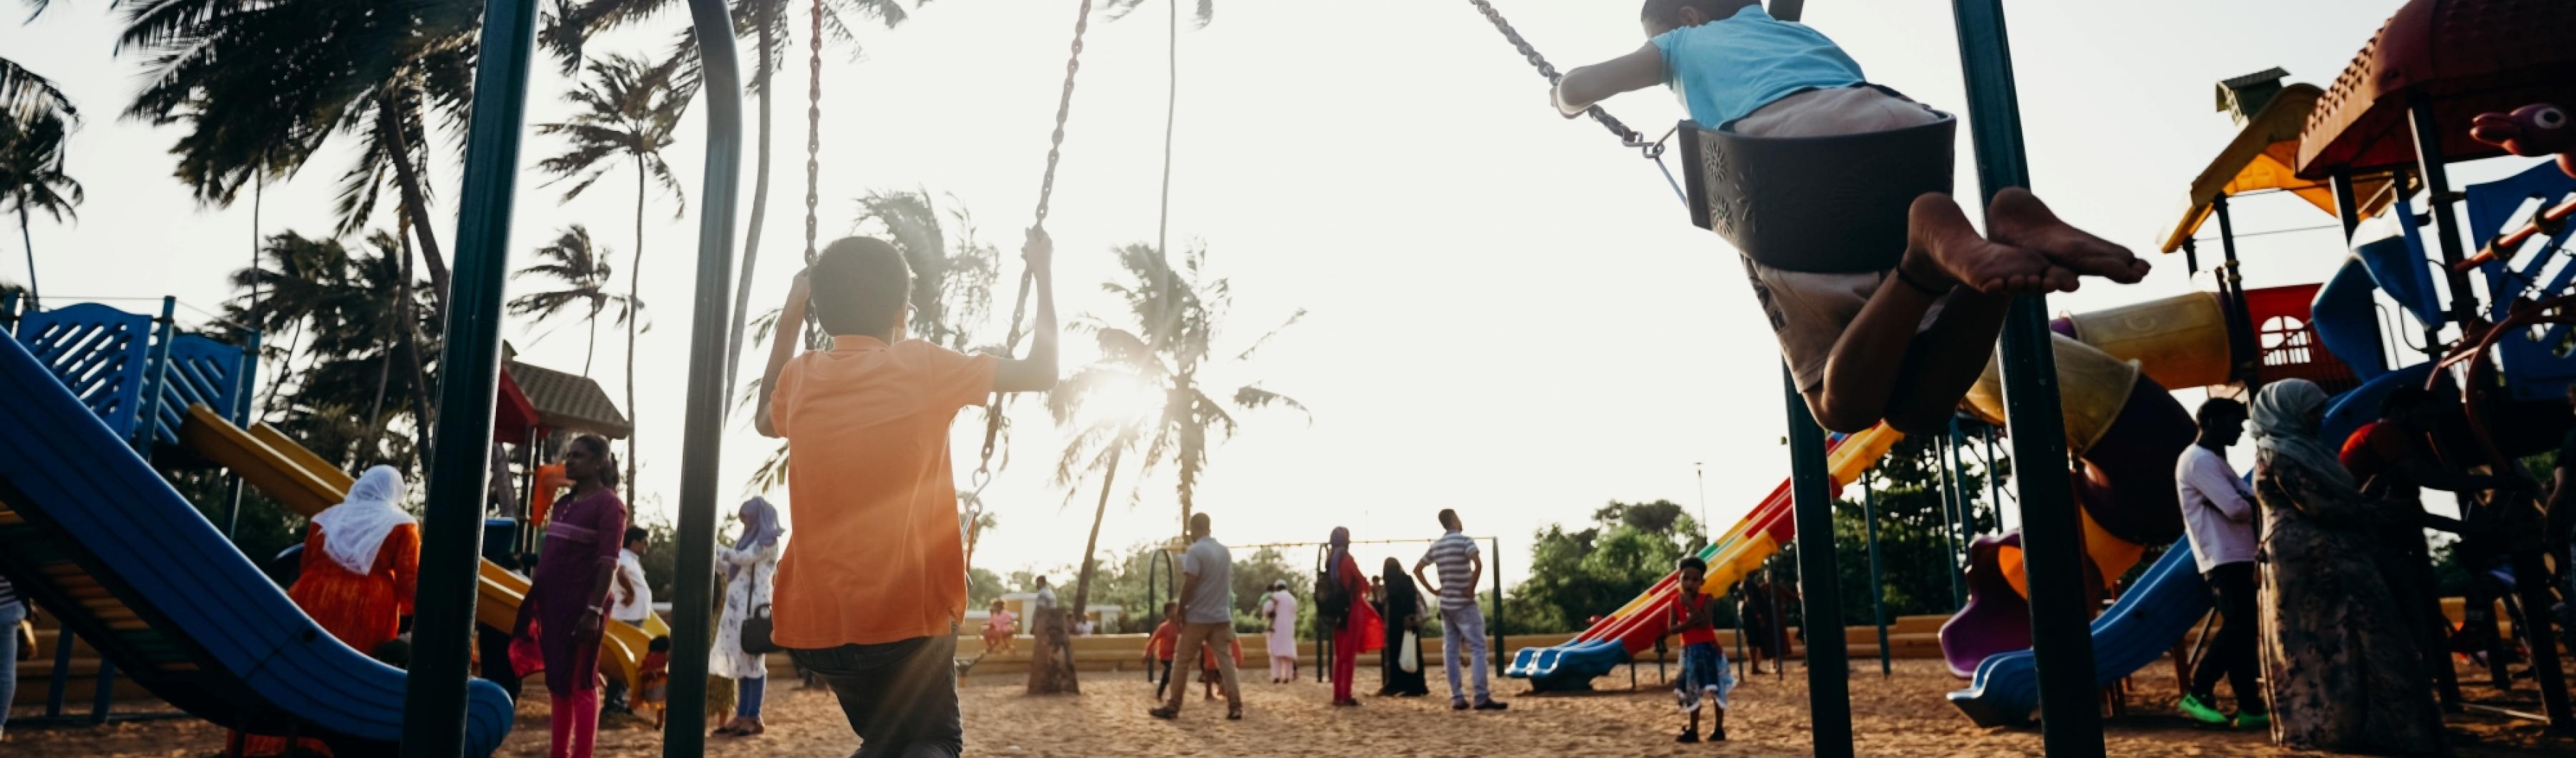 Niños jugando en columpios en un parque de barrio bordeado de árboles